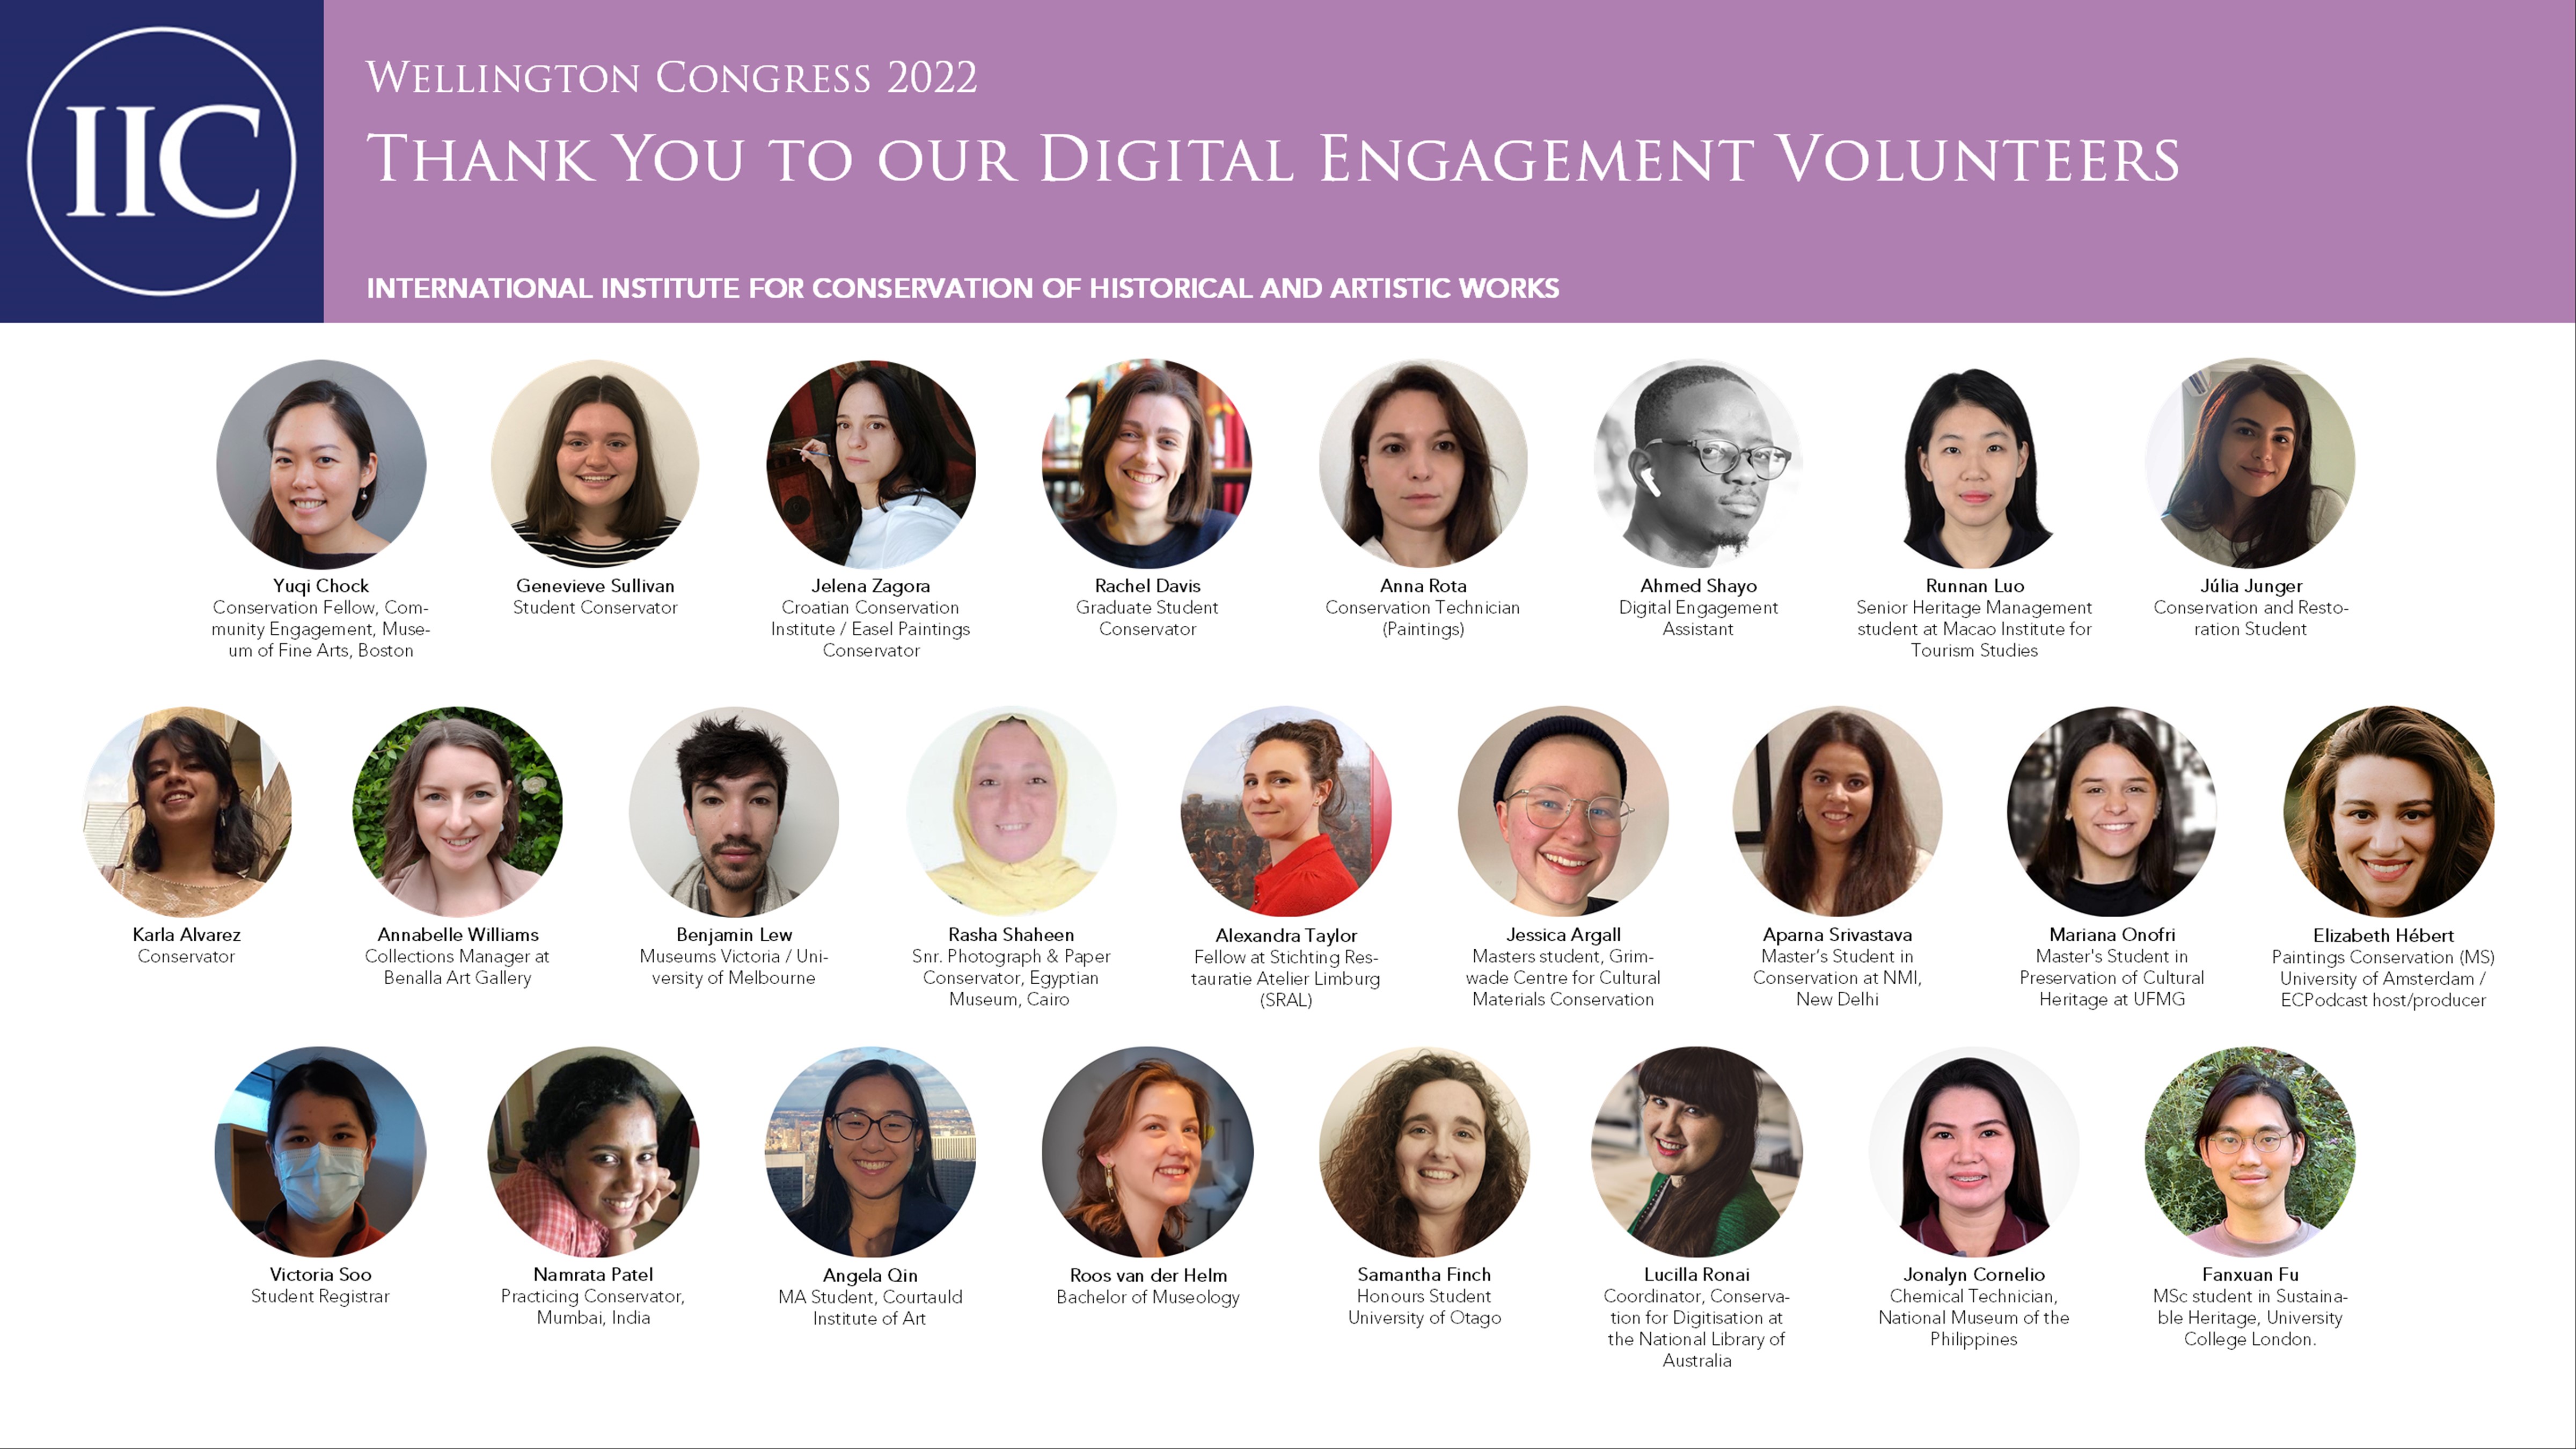 Introducing the Digital Engagement Volunteers!